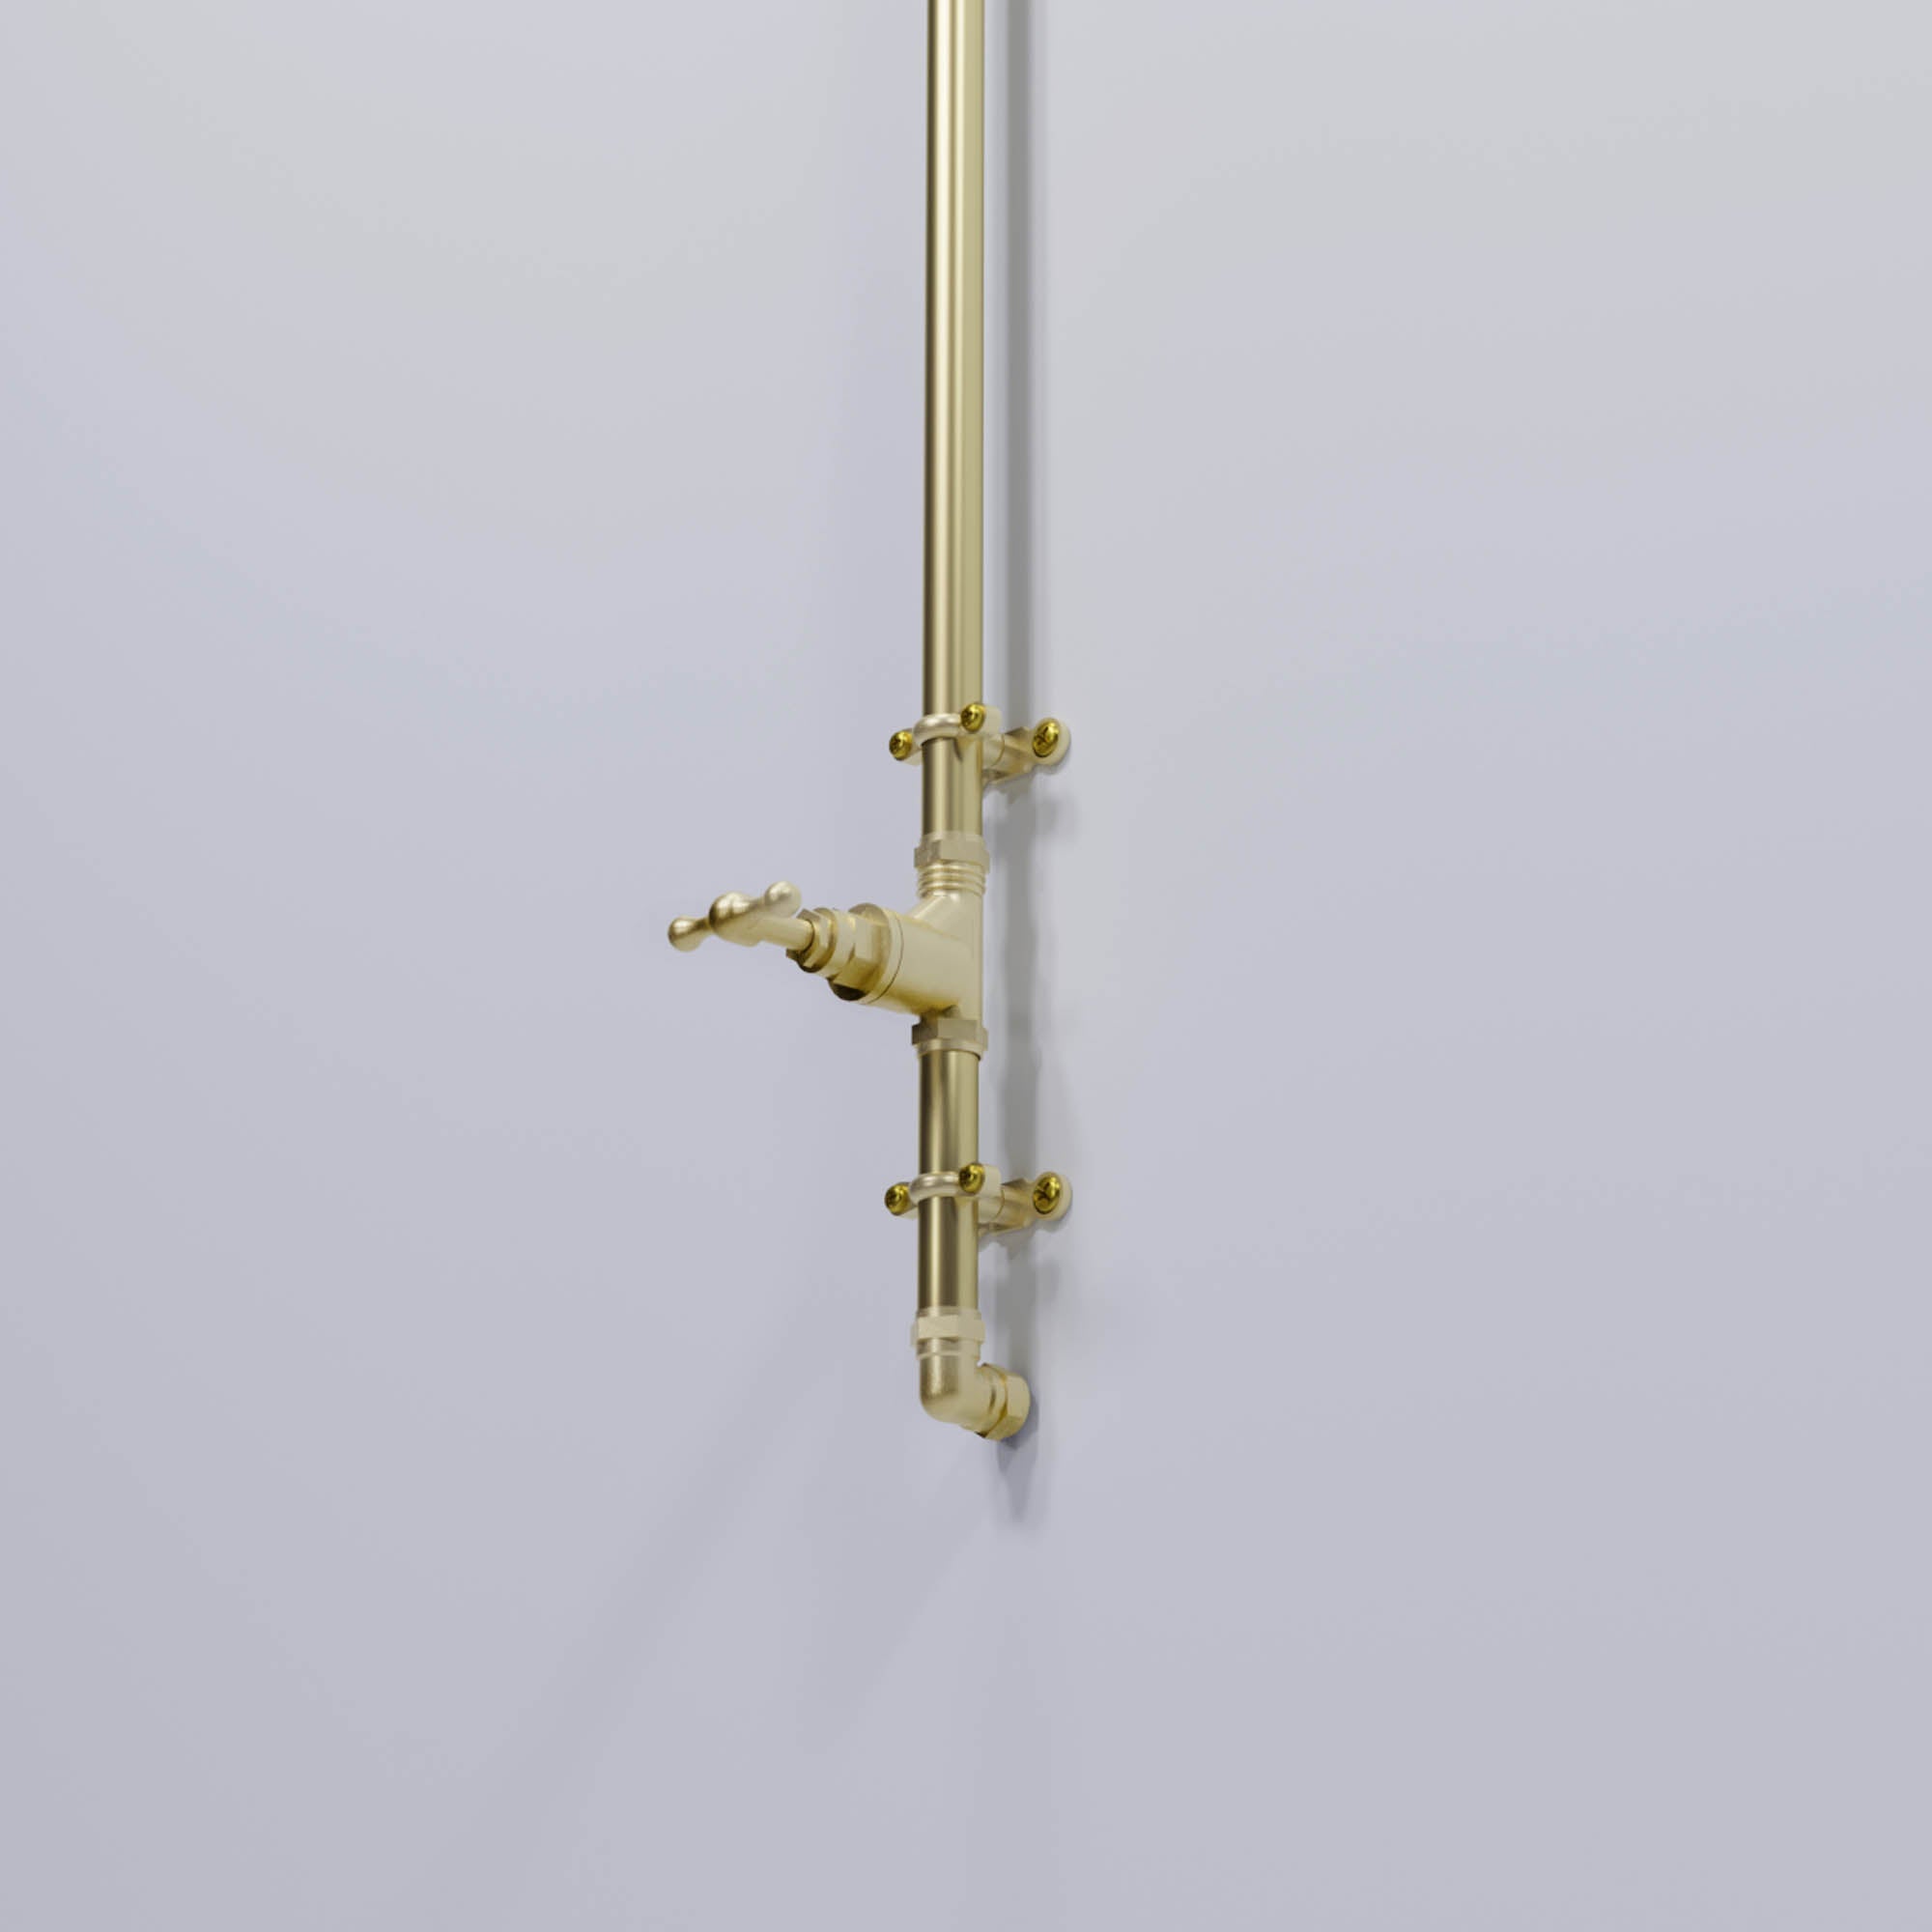 brass shower valve, shower faucet